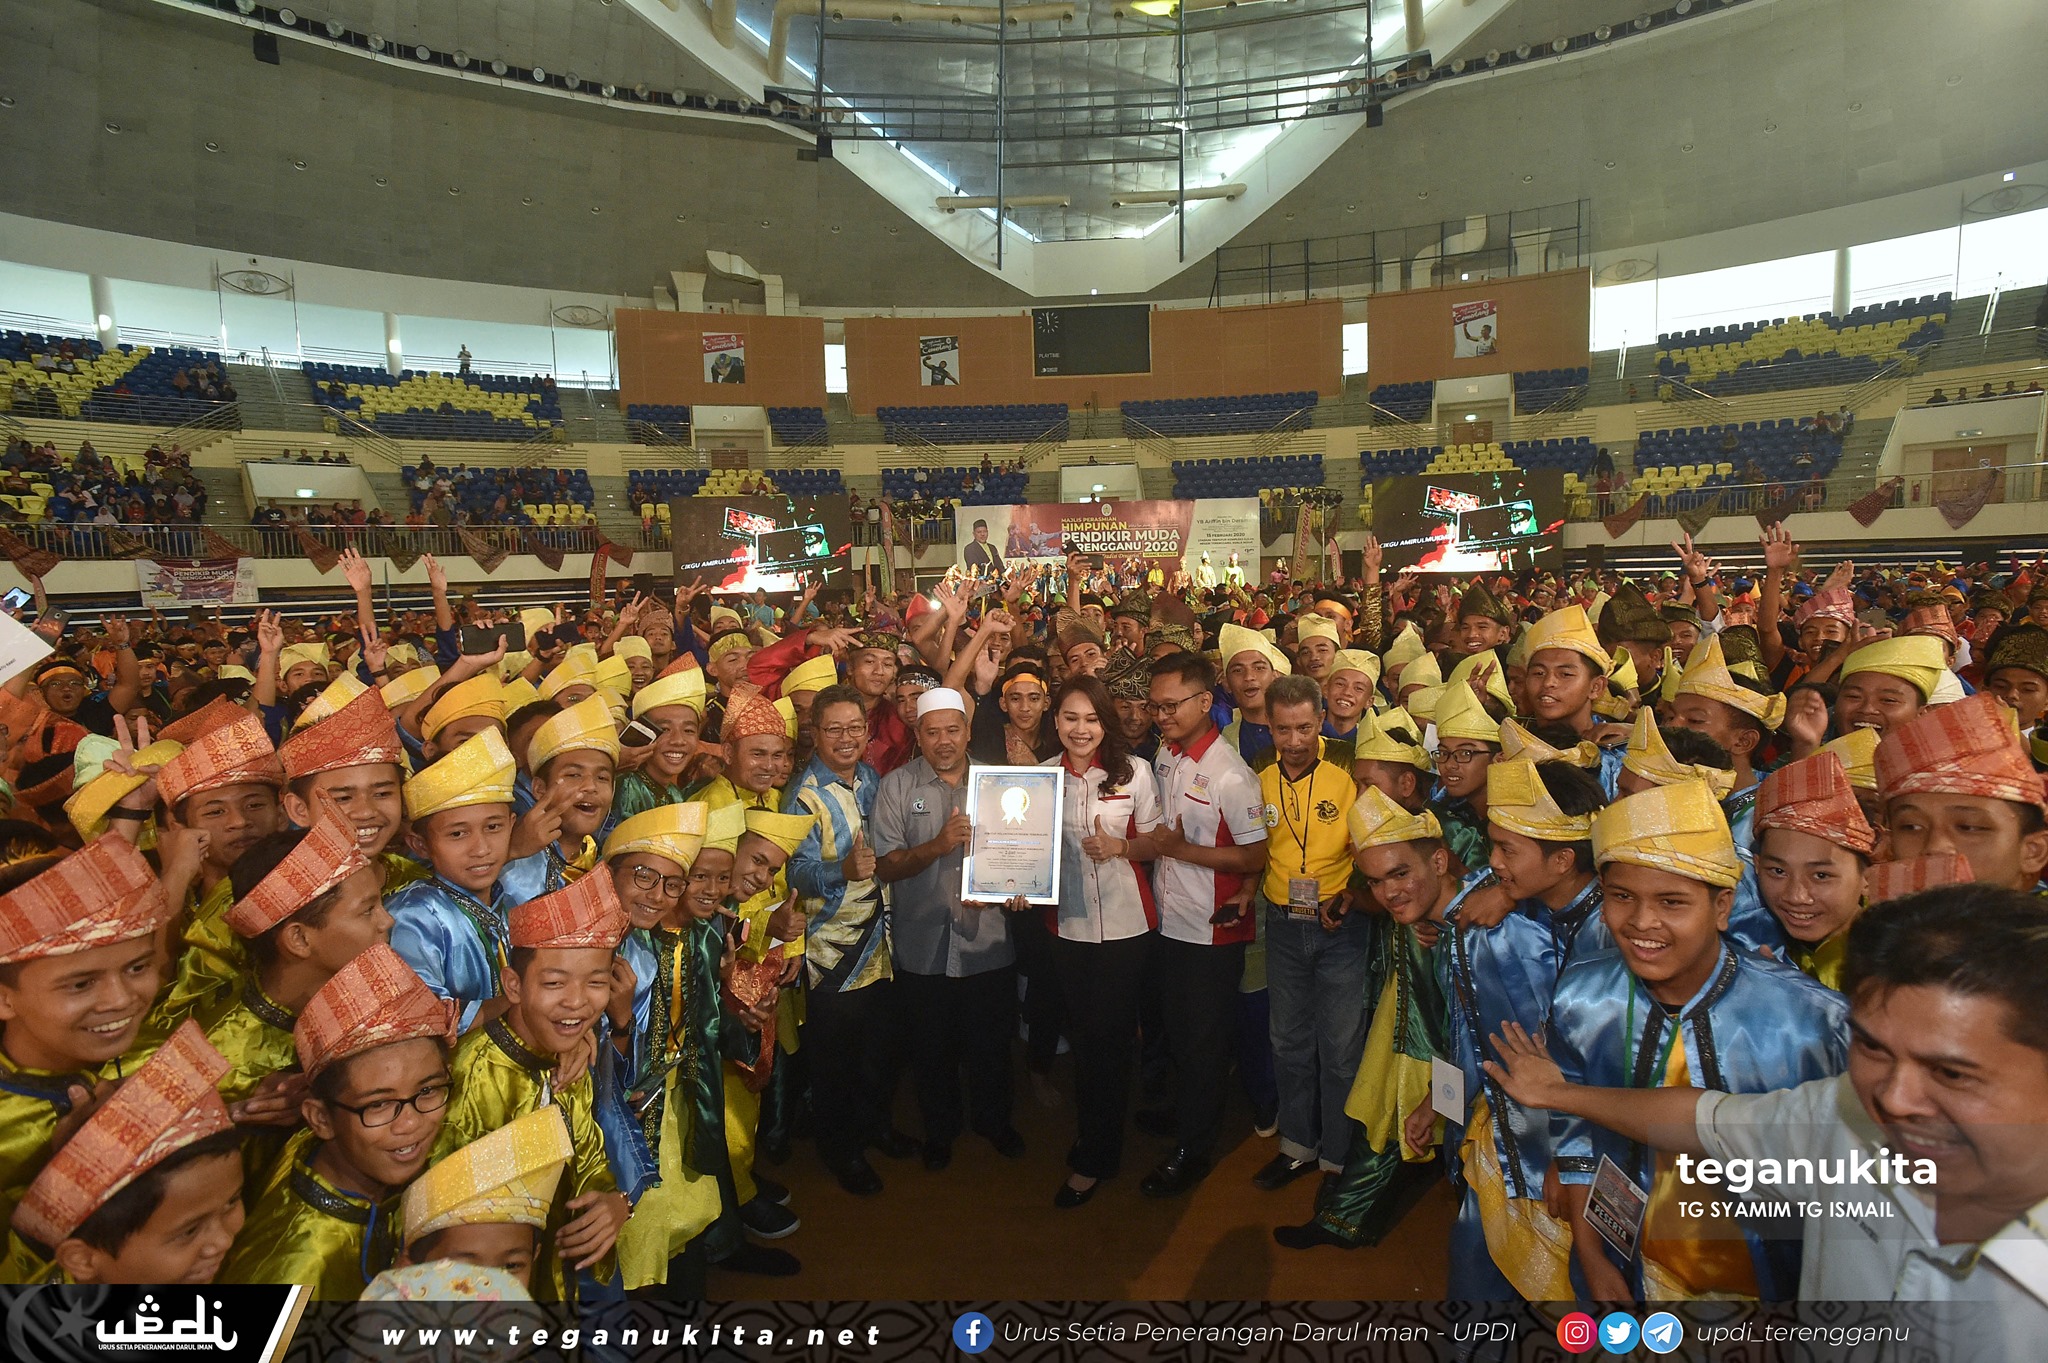 Buat julung kalinya kerajaan negeri melalui jabatan pelancongan menganjurkan persembahan dikir barat terbesar yang menampilkan 2020 orang peserta sekaligus mencipta nama dalam Malaysian Book Of Record